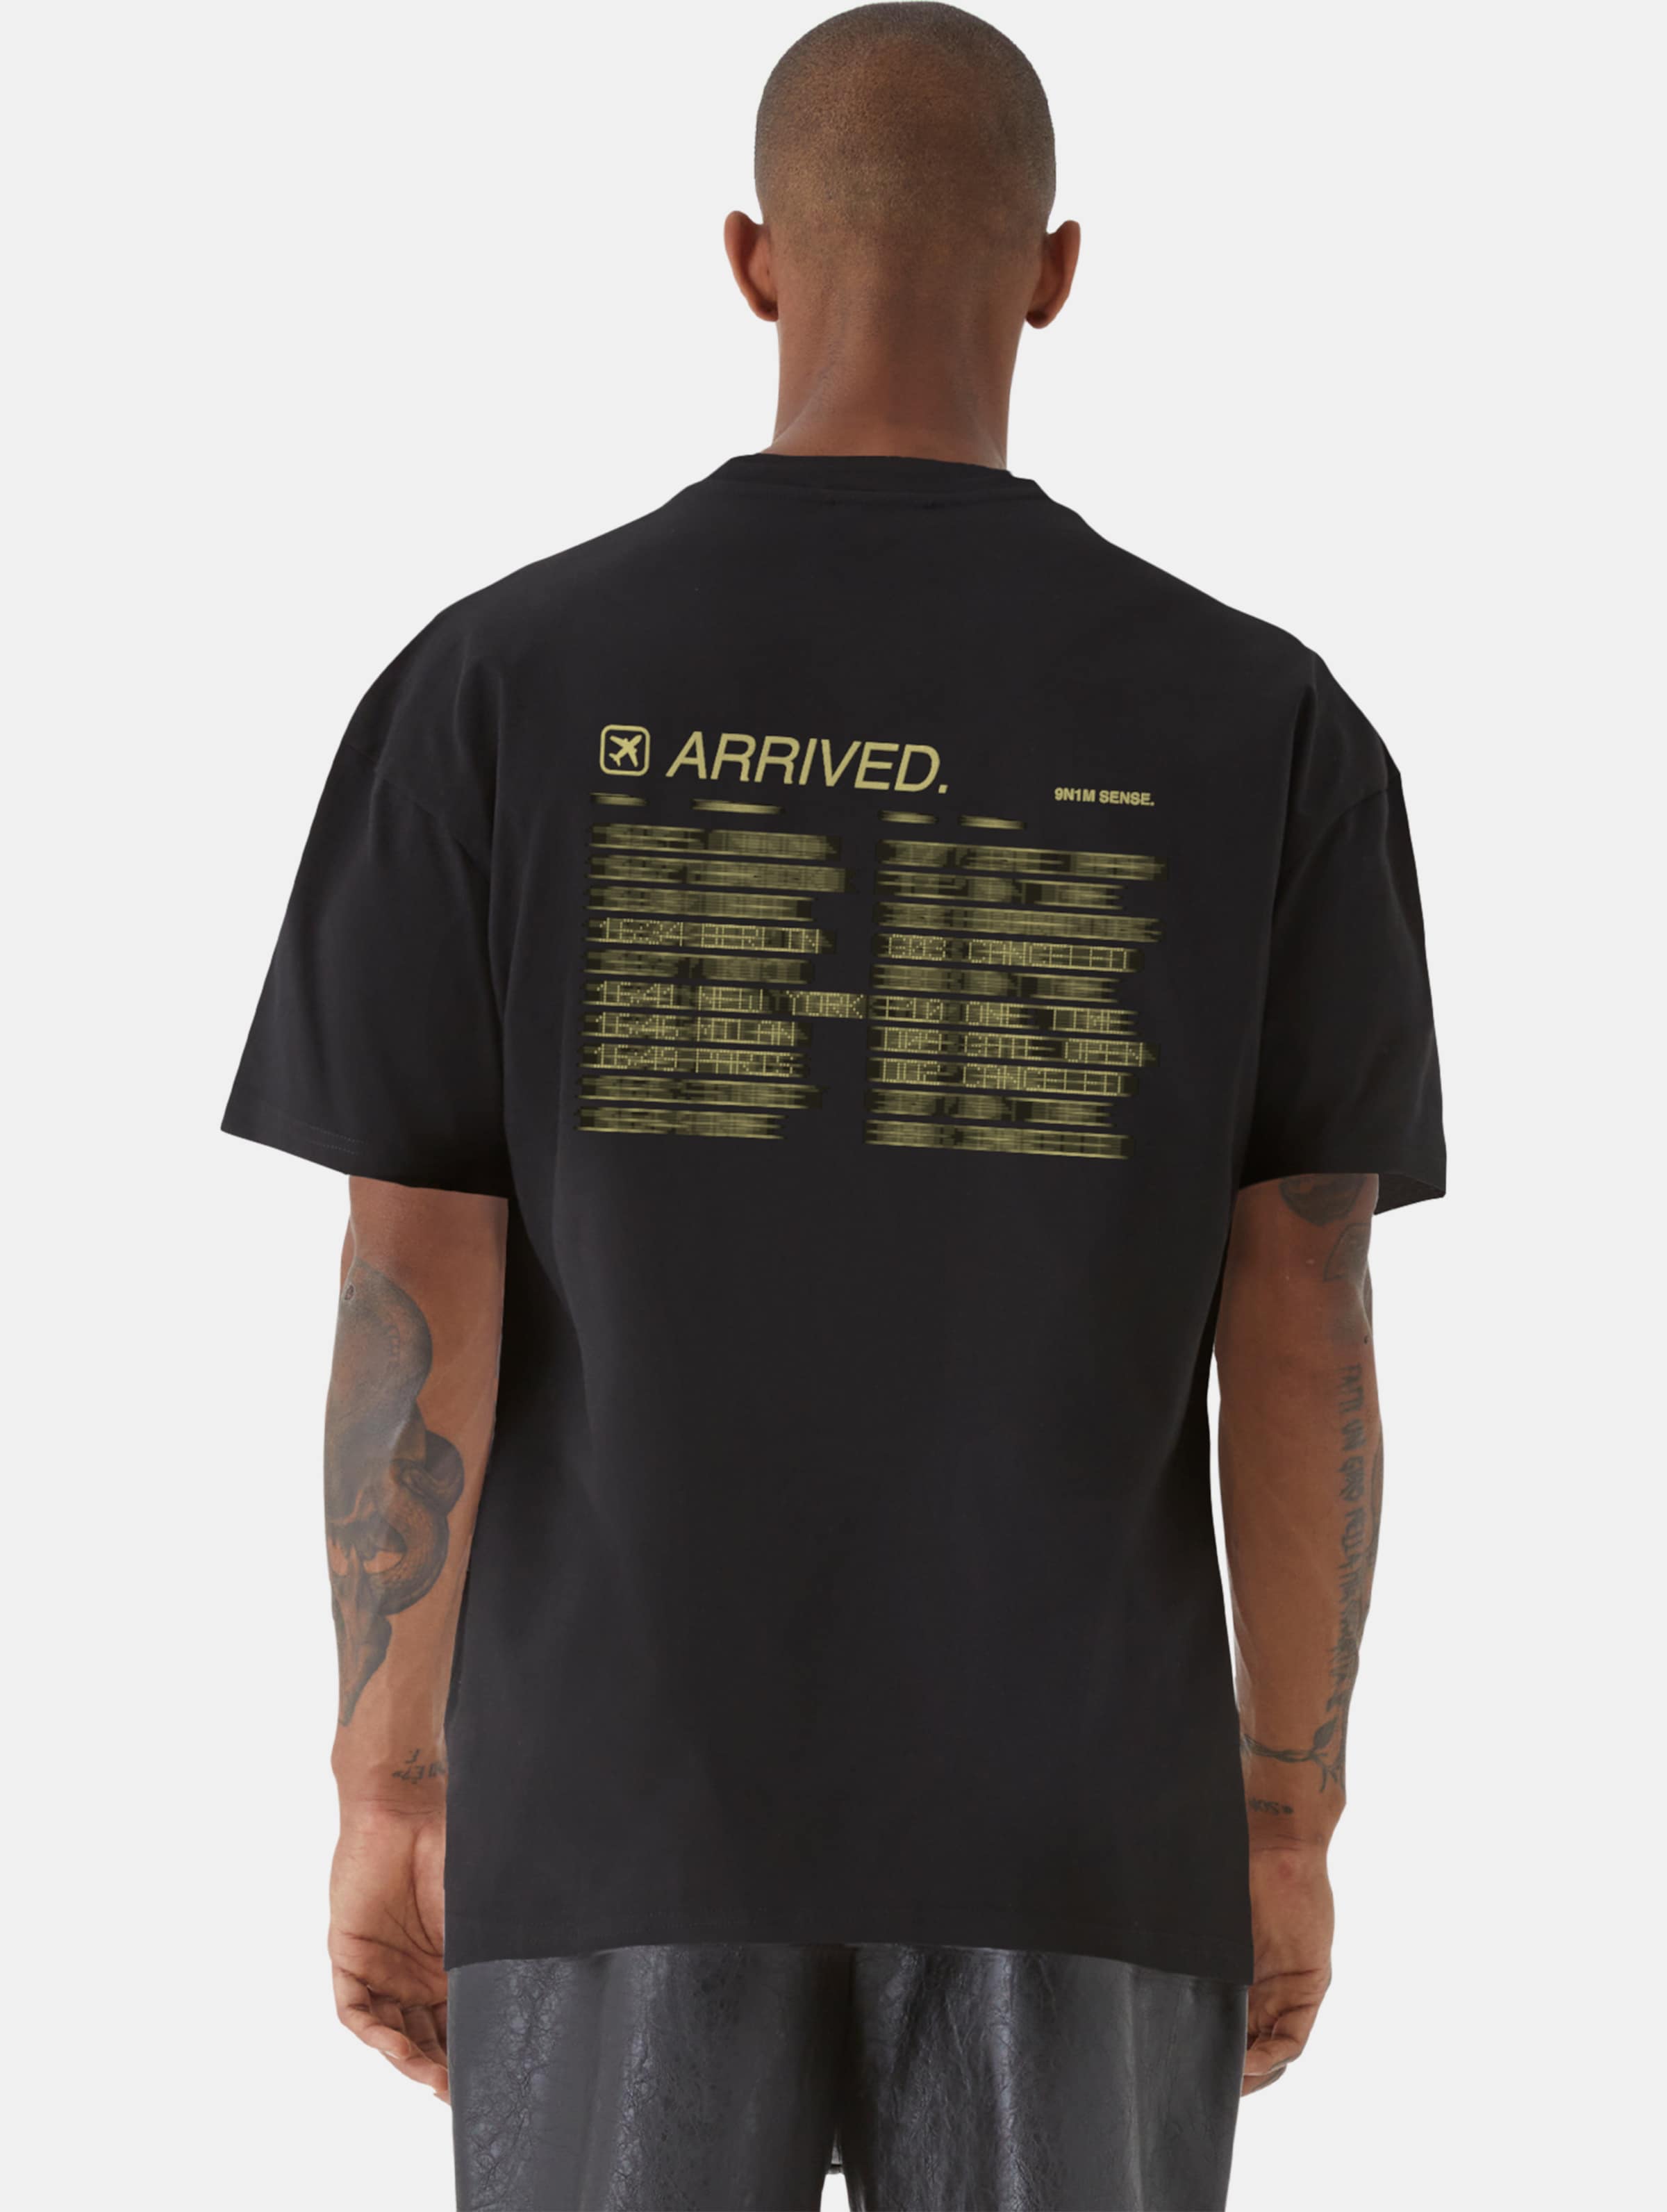 9N1M SENSE ARRIVED T-Shirt Männer,Unisex op kleur zwart, Maat M